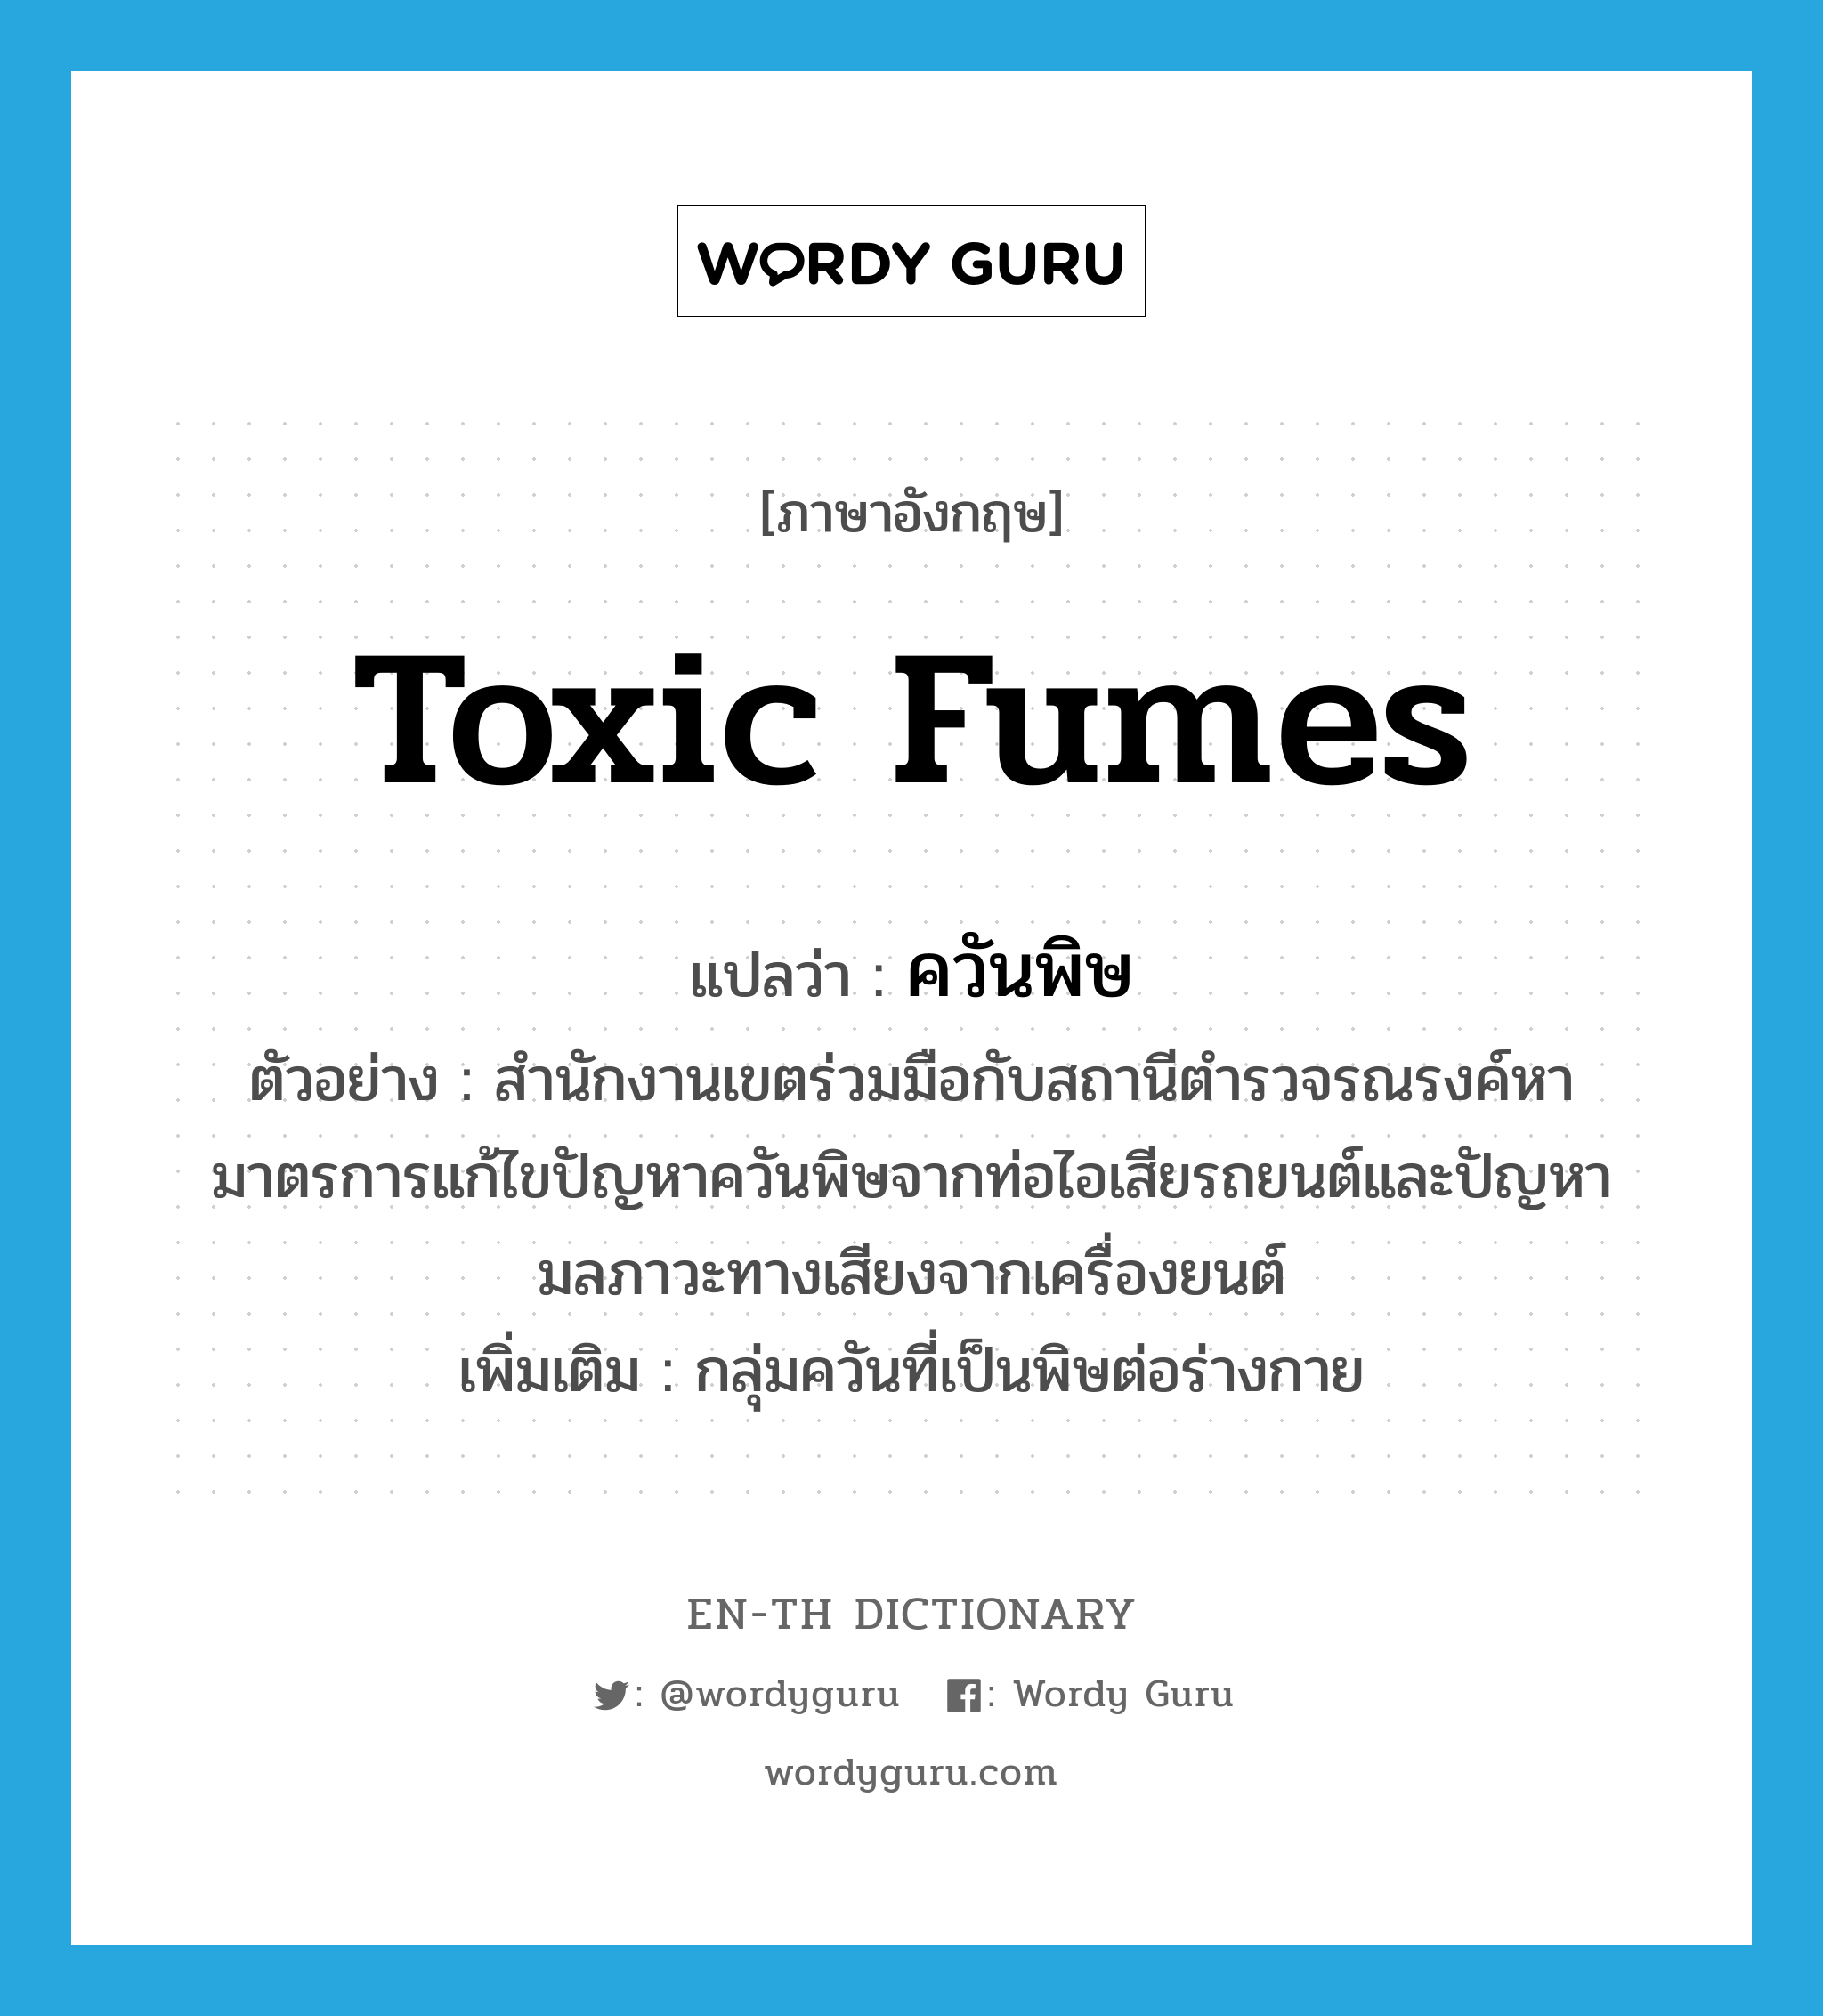 toxic fumes แปลว่า?, คำศัพท์ภาษาอังกฤษ toxic fumes แปลว่า ควันพิษ ประเภท N ตัวอย่าง สำนักงานเขตร่วมมือกับสถานีตำรวจรณรงค์หามาตรการแก้ไขปัญหาควันพิษจากท่อไอเสียรถยนต์และปัญหามลภาวะทางเสียงจากเครื่องยนต์ เพิ่มเติม กลุ่มควันที่เป็นพิษต่อร่างกาย หมวด N